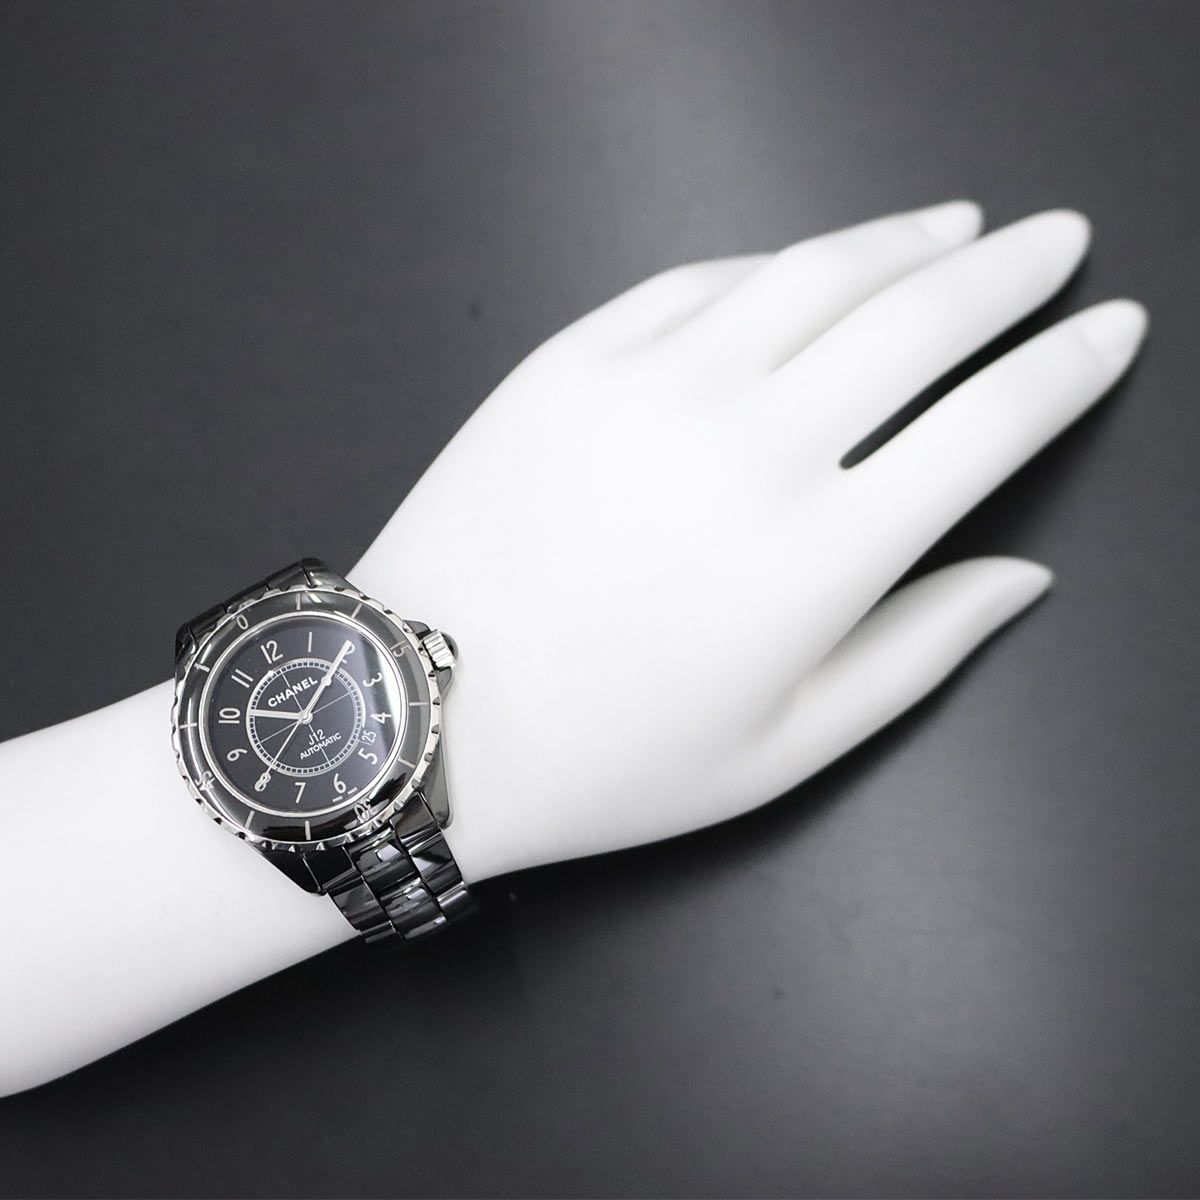 CHANEL シャネル CHANEL J12 42mm H2980 メンズ 腕時計 ブラック セラミック デイト オートマ 自動巻き ウォッチ 90233441